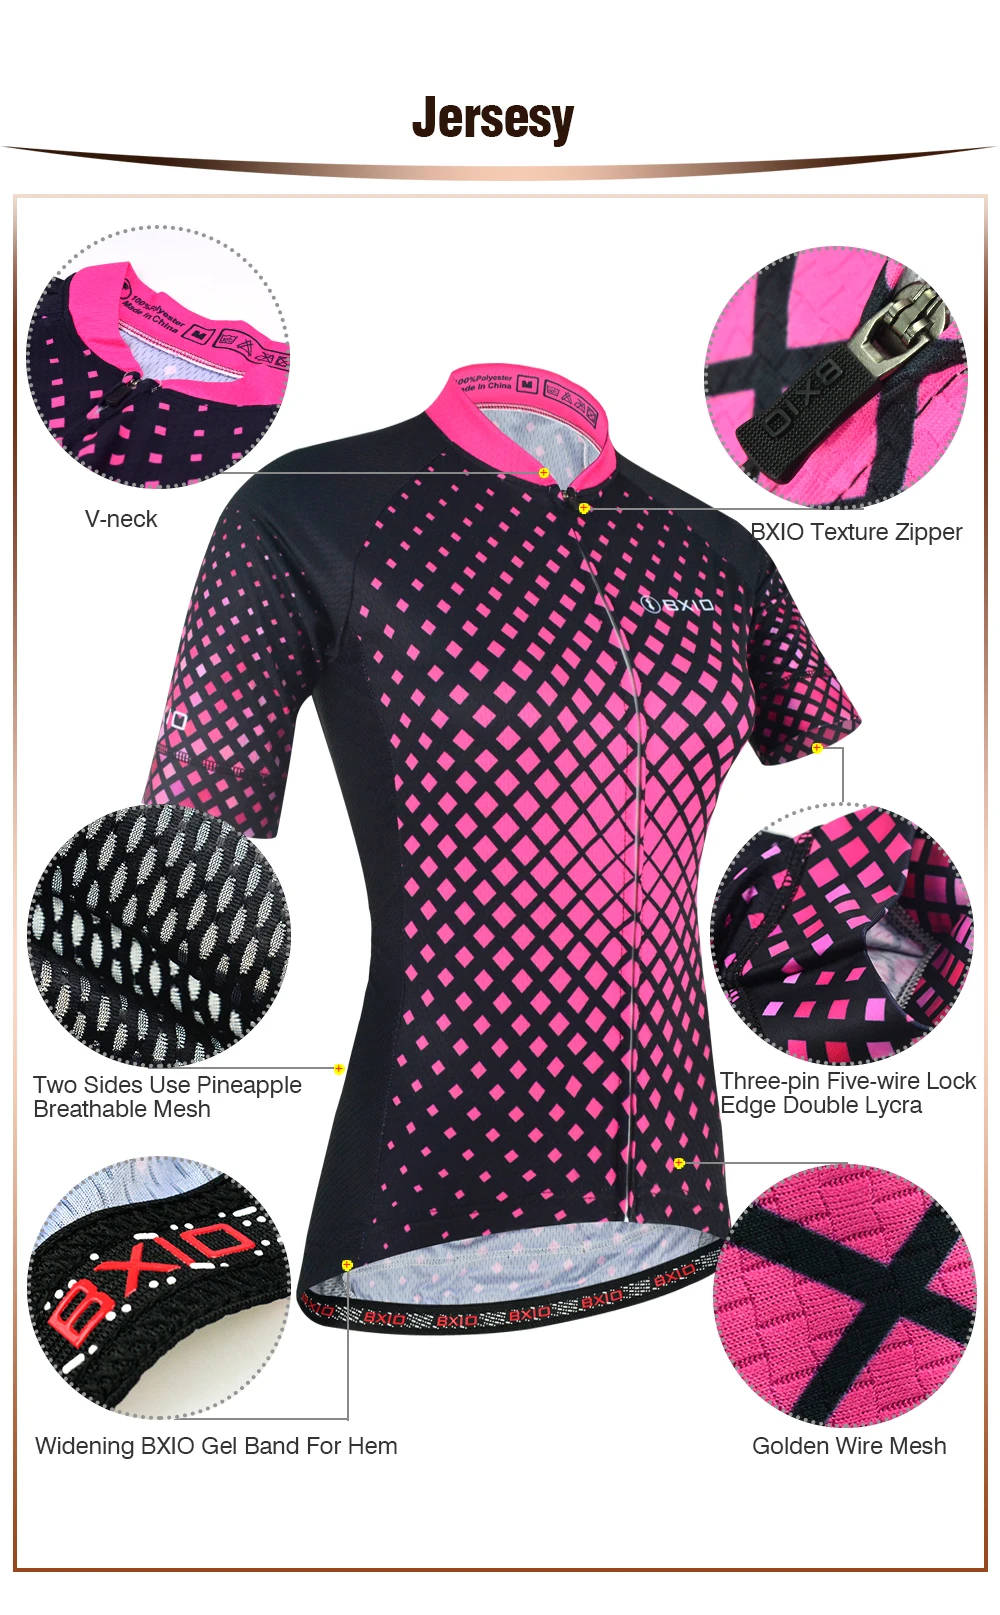 BXIO Женская одежда для велоспорта гелевая прокладка с двойной лайкрой для манжет дышащий материал для двух сторон майки для велоспорта 177